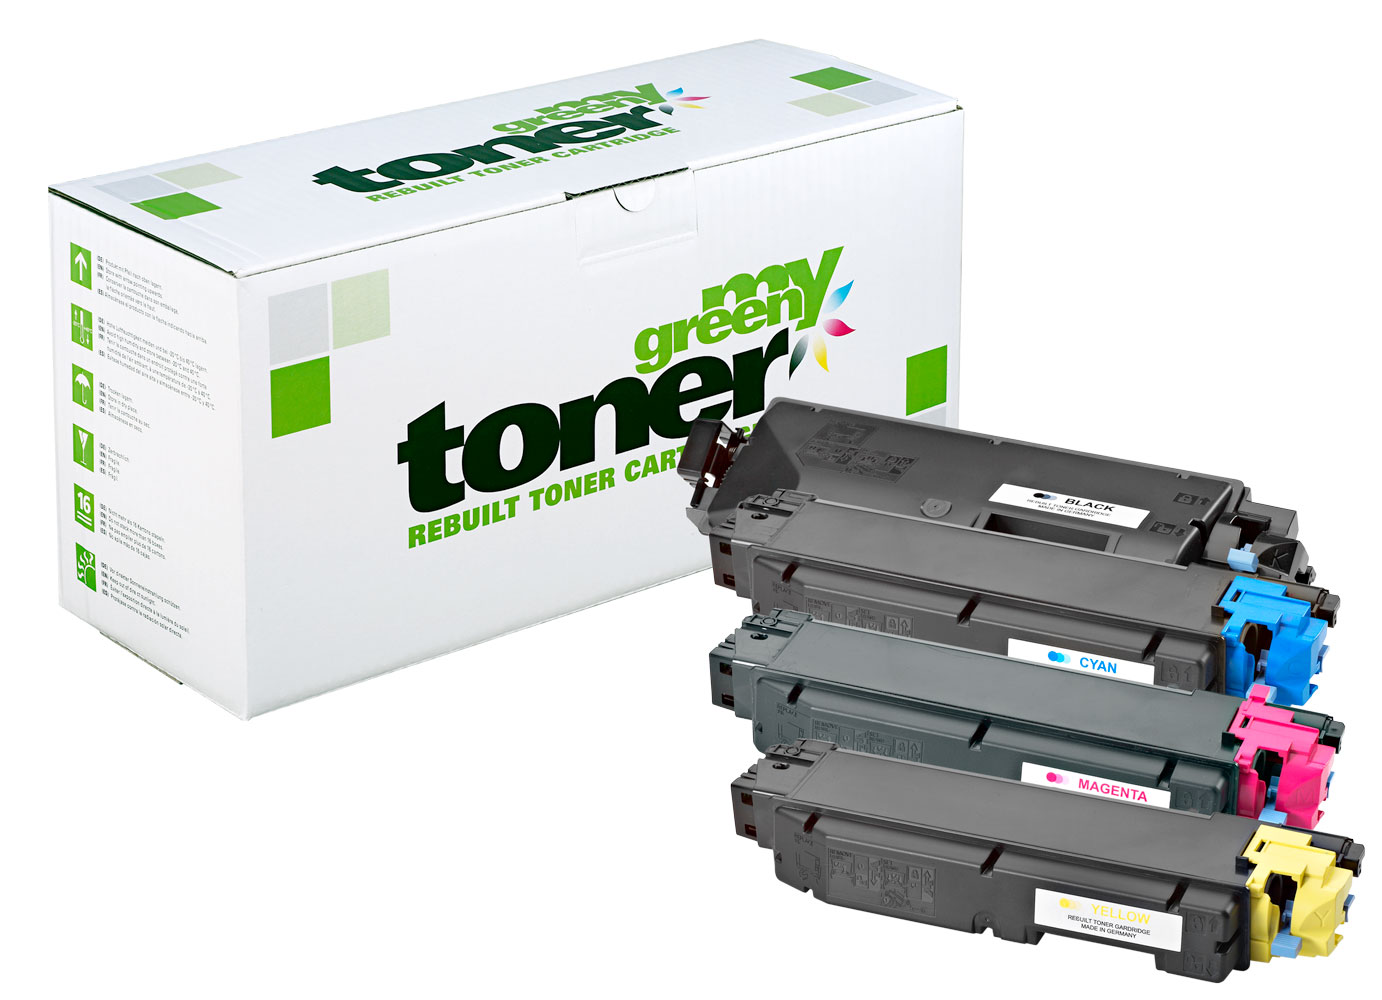 Rebuilt toner cartridge for Kyocera TASKalfa 352